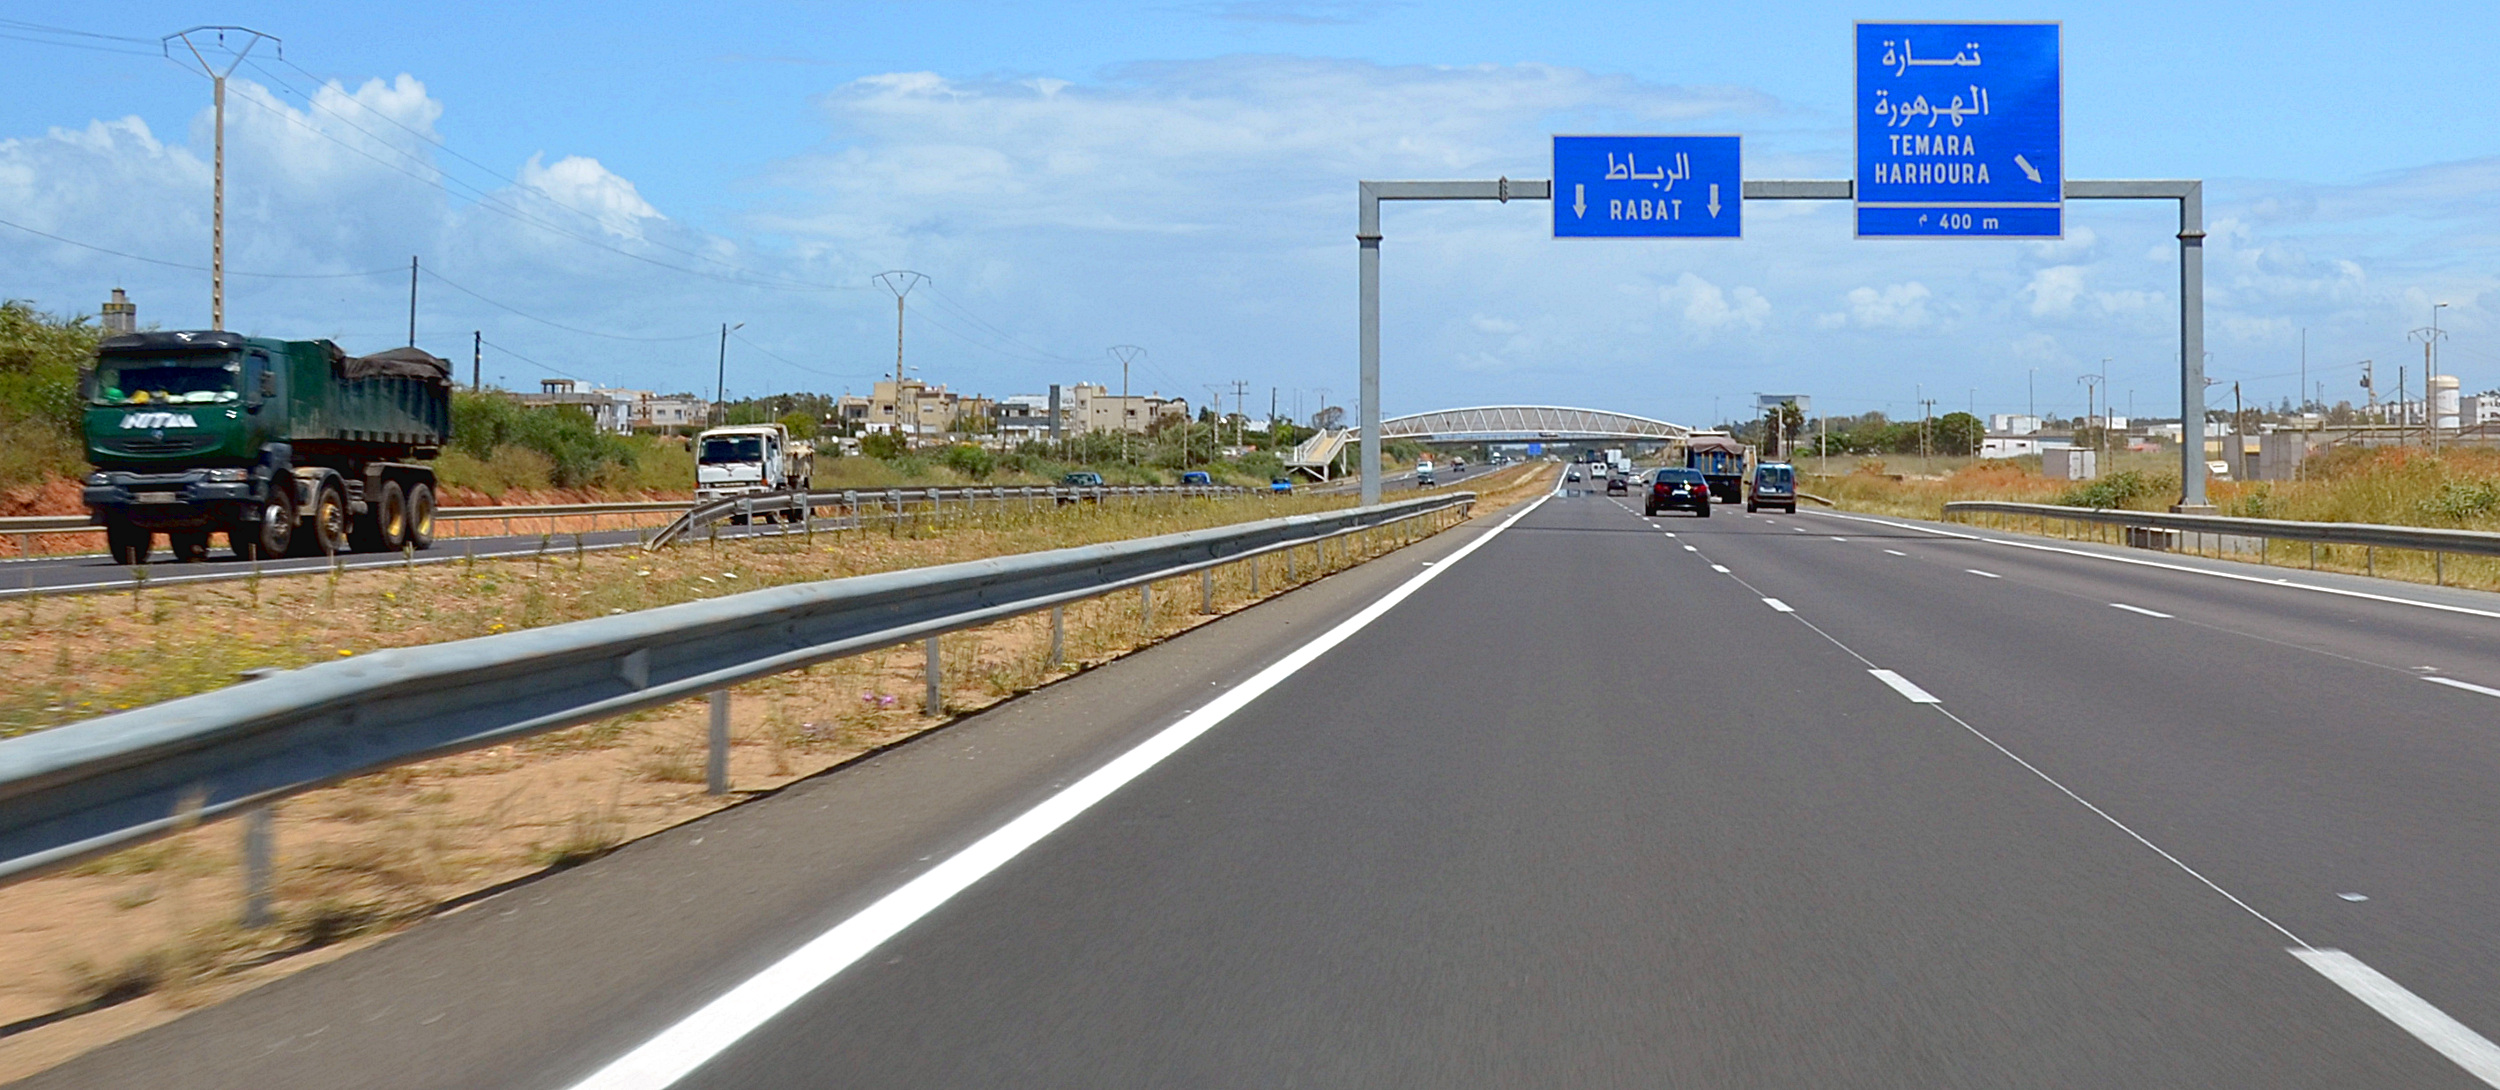 Autoroute Rabat-Casablanca: 50 MDH investis dans un projet de pont pour fluidifier le trafic au niveau de l'échangeur de Témara